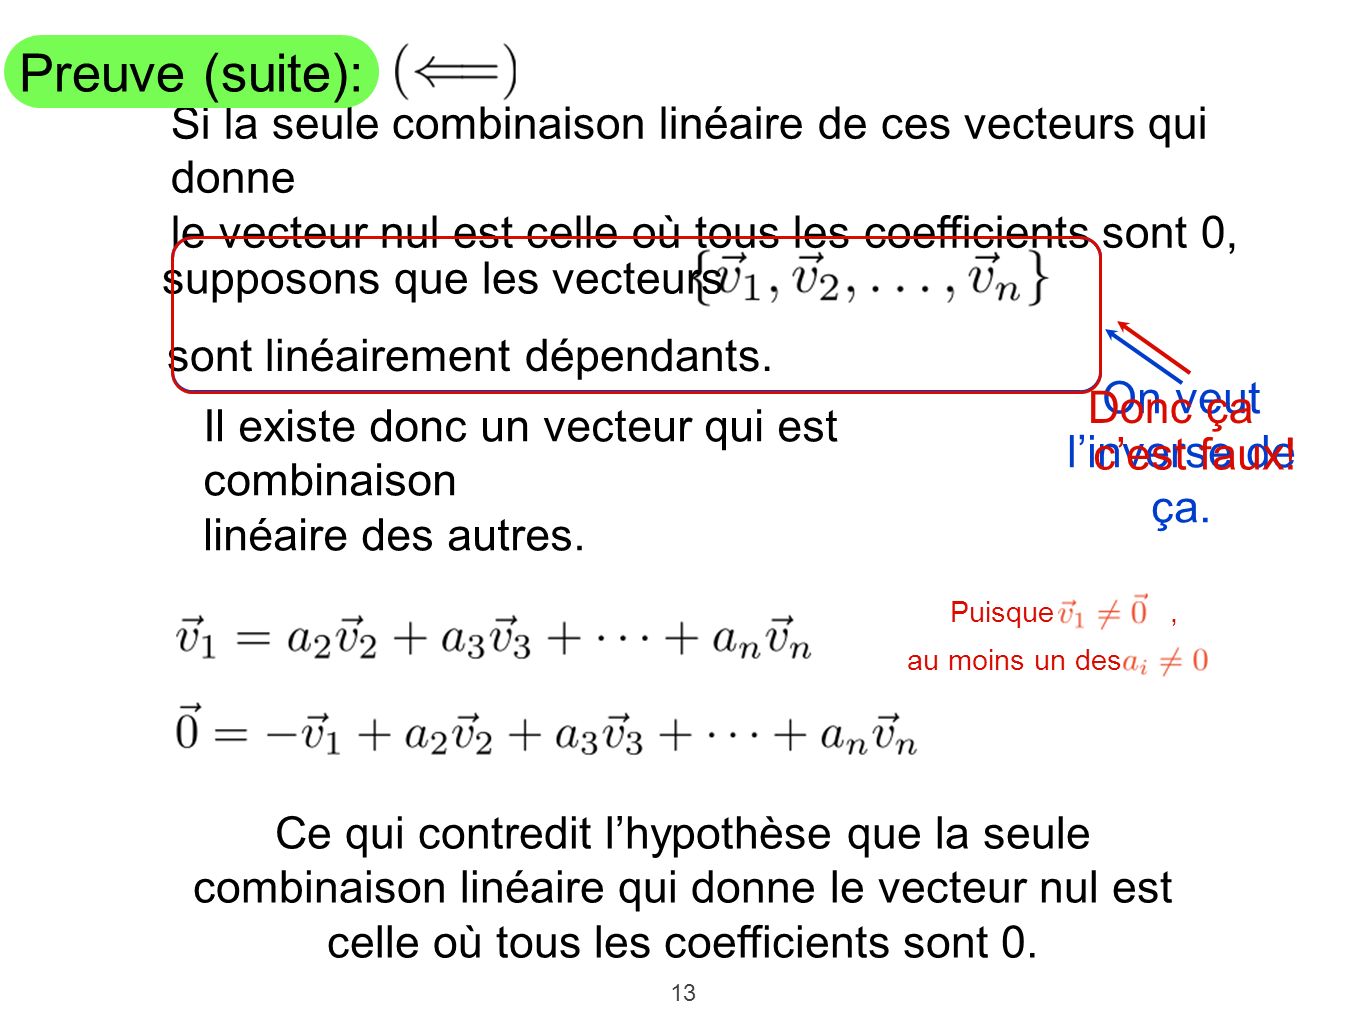 Preuve (suite): Si la seule combinaison linéaire de ces vecteurs qui donne. le vecteur nul est celle où tous les coefficients sont 0,